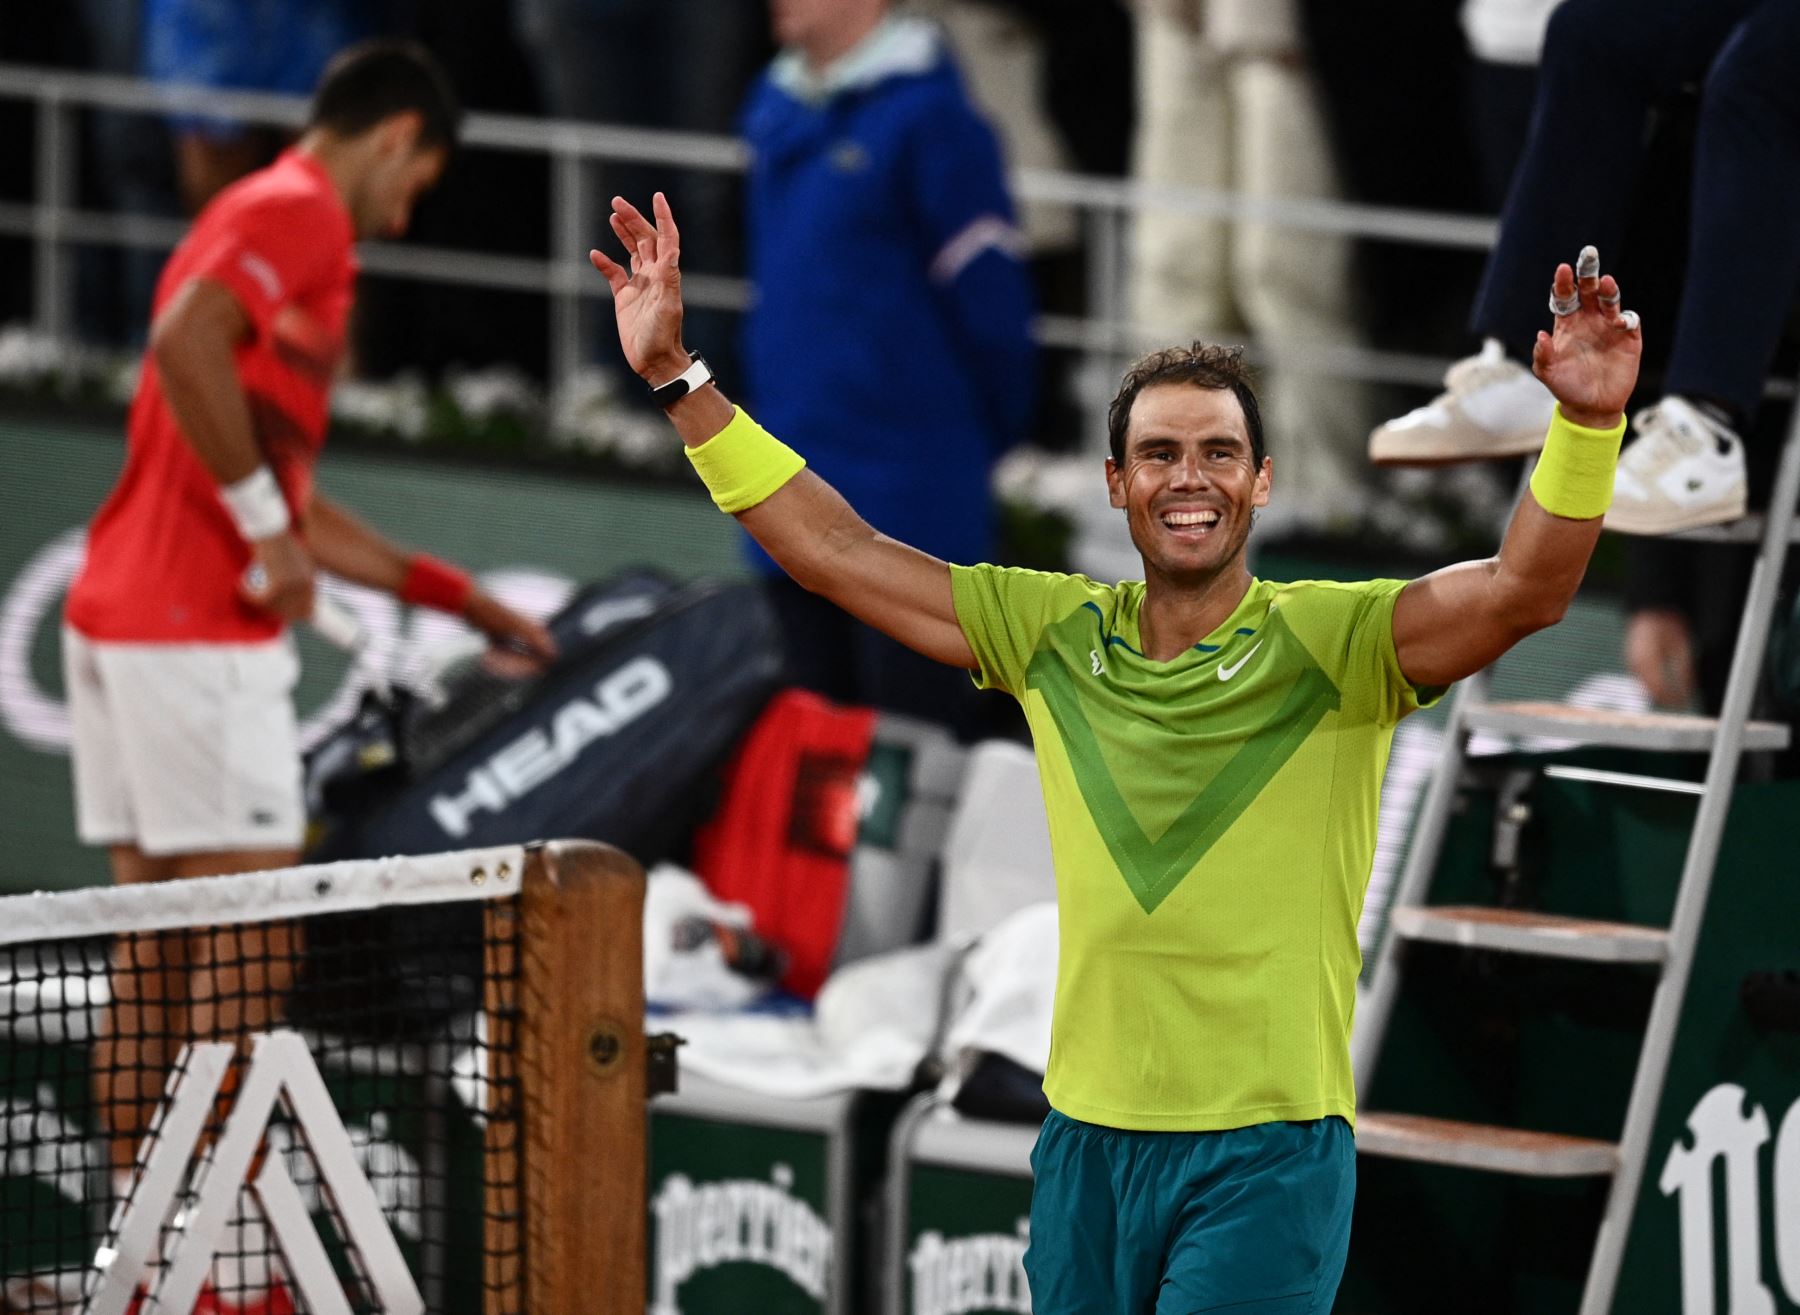 Con la victoria de Nadal, el balance entre ambos en esta rivalidad histórica es de 30 victorias para Djokovic y 29 para Nadal. Foto: AFP